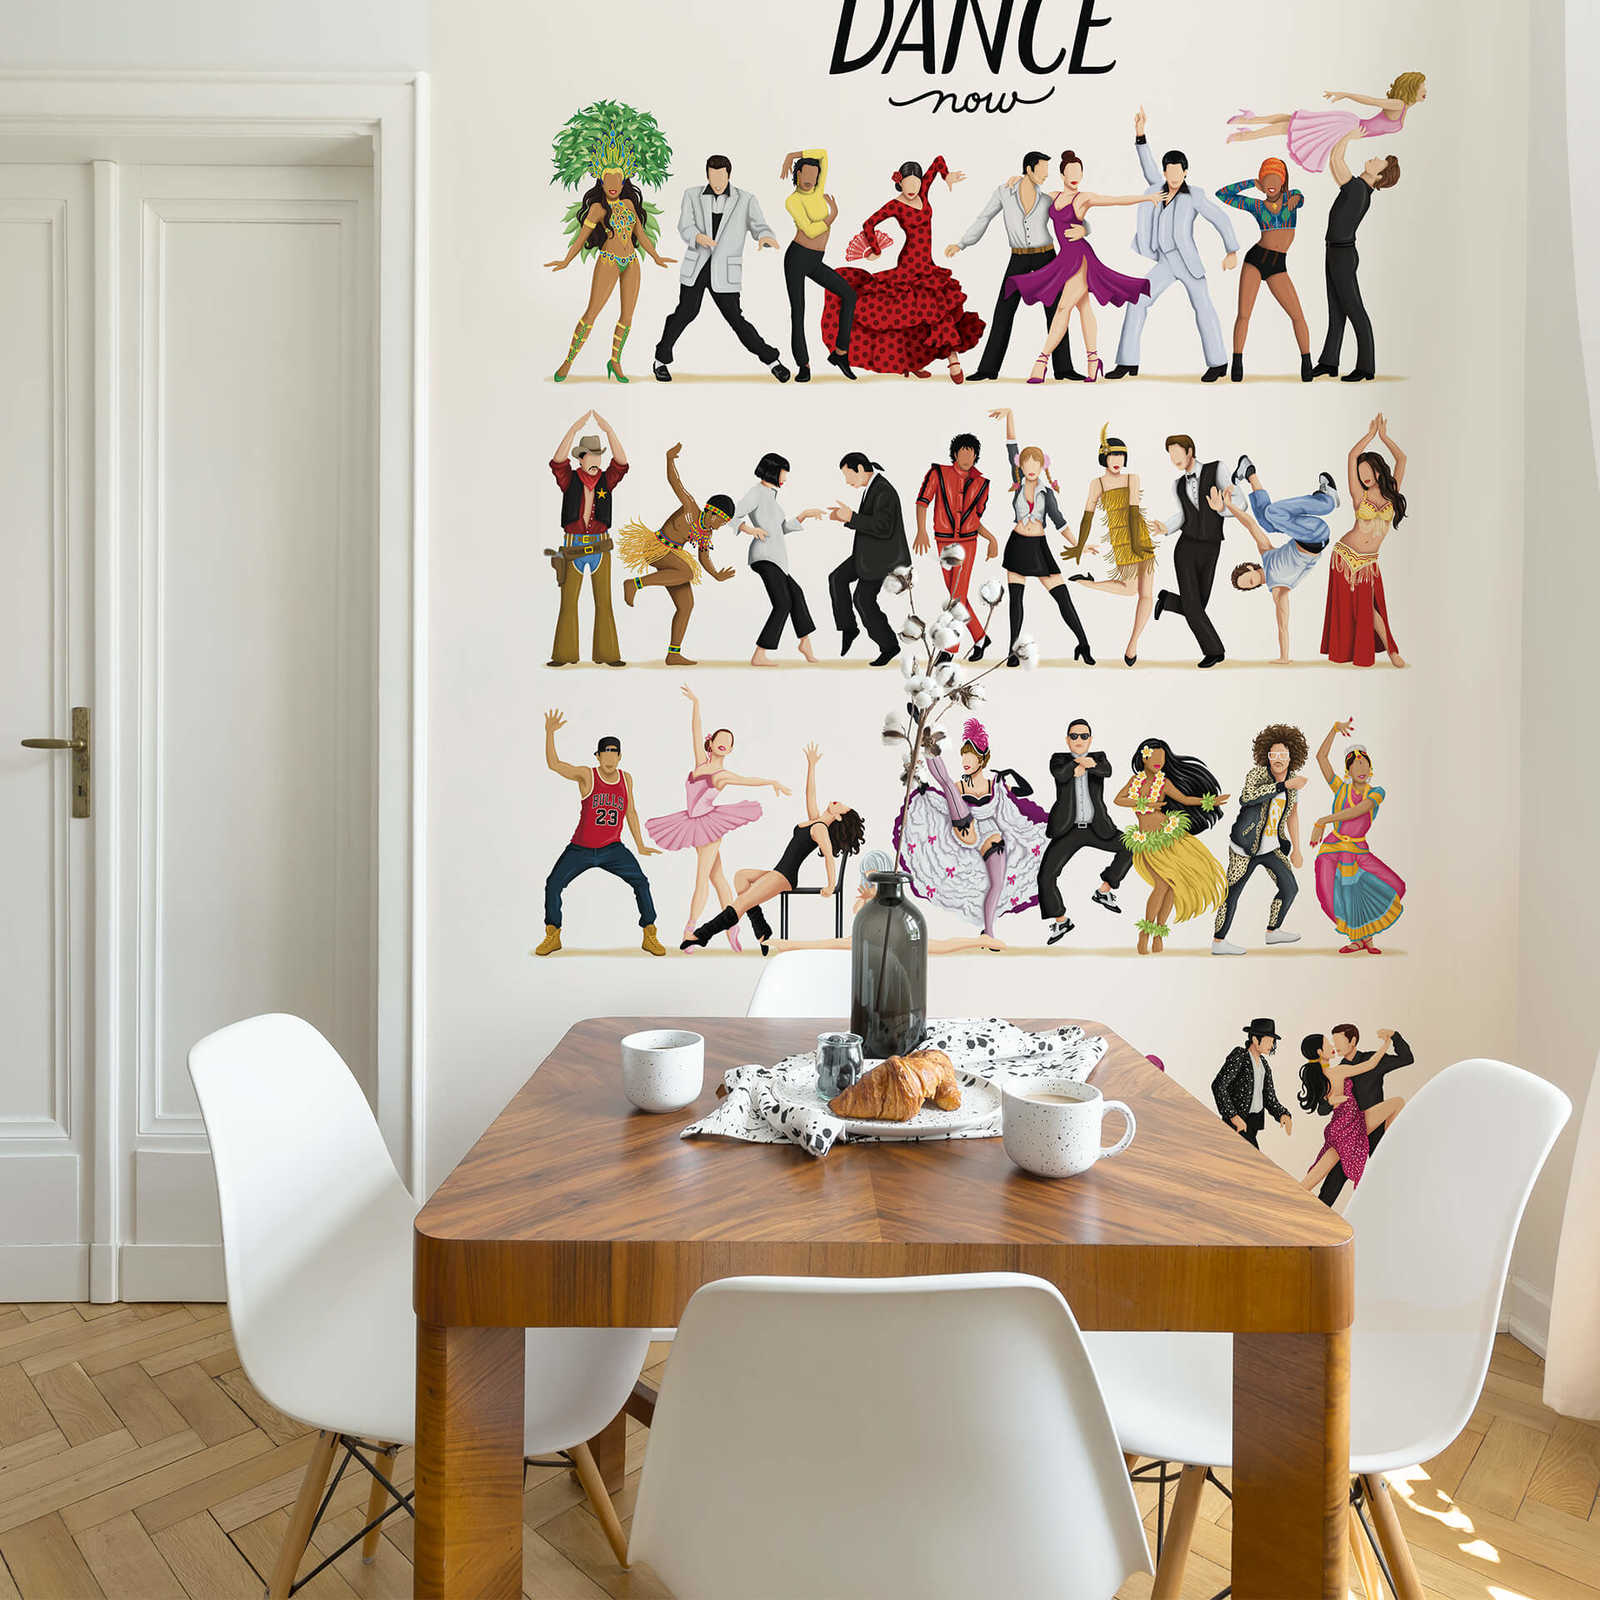             Fototapete tanzende Menschen skizziert
        